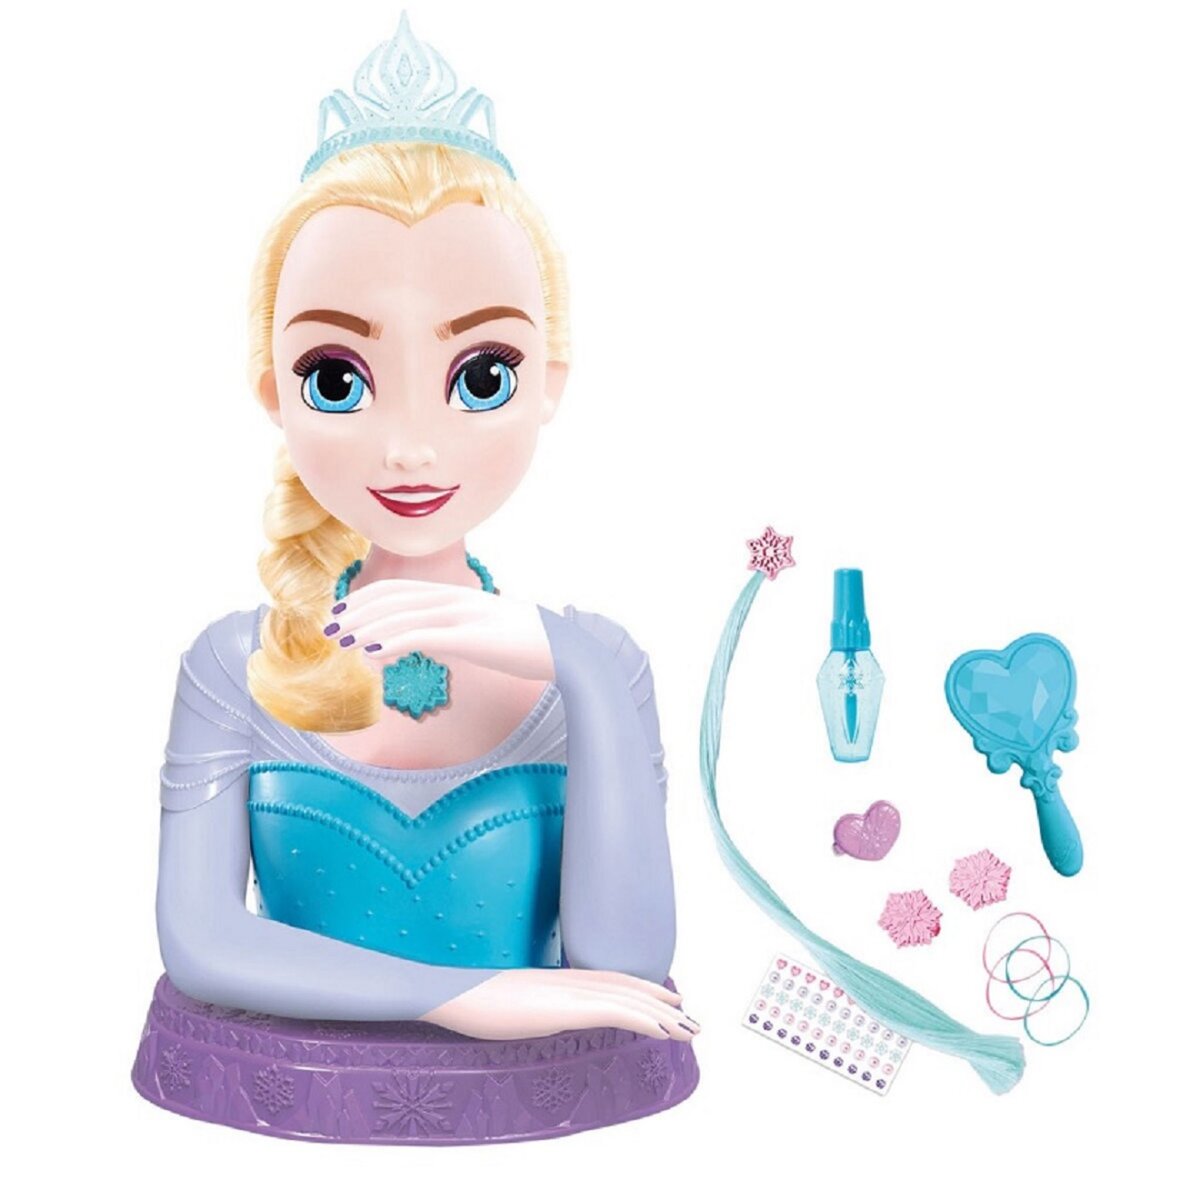 Tête à Coiffer Disney Frozen Elsa Deluxe